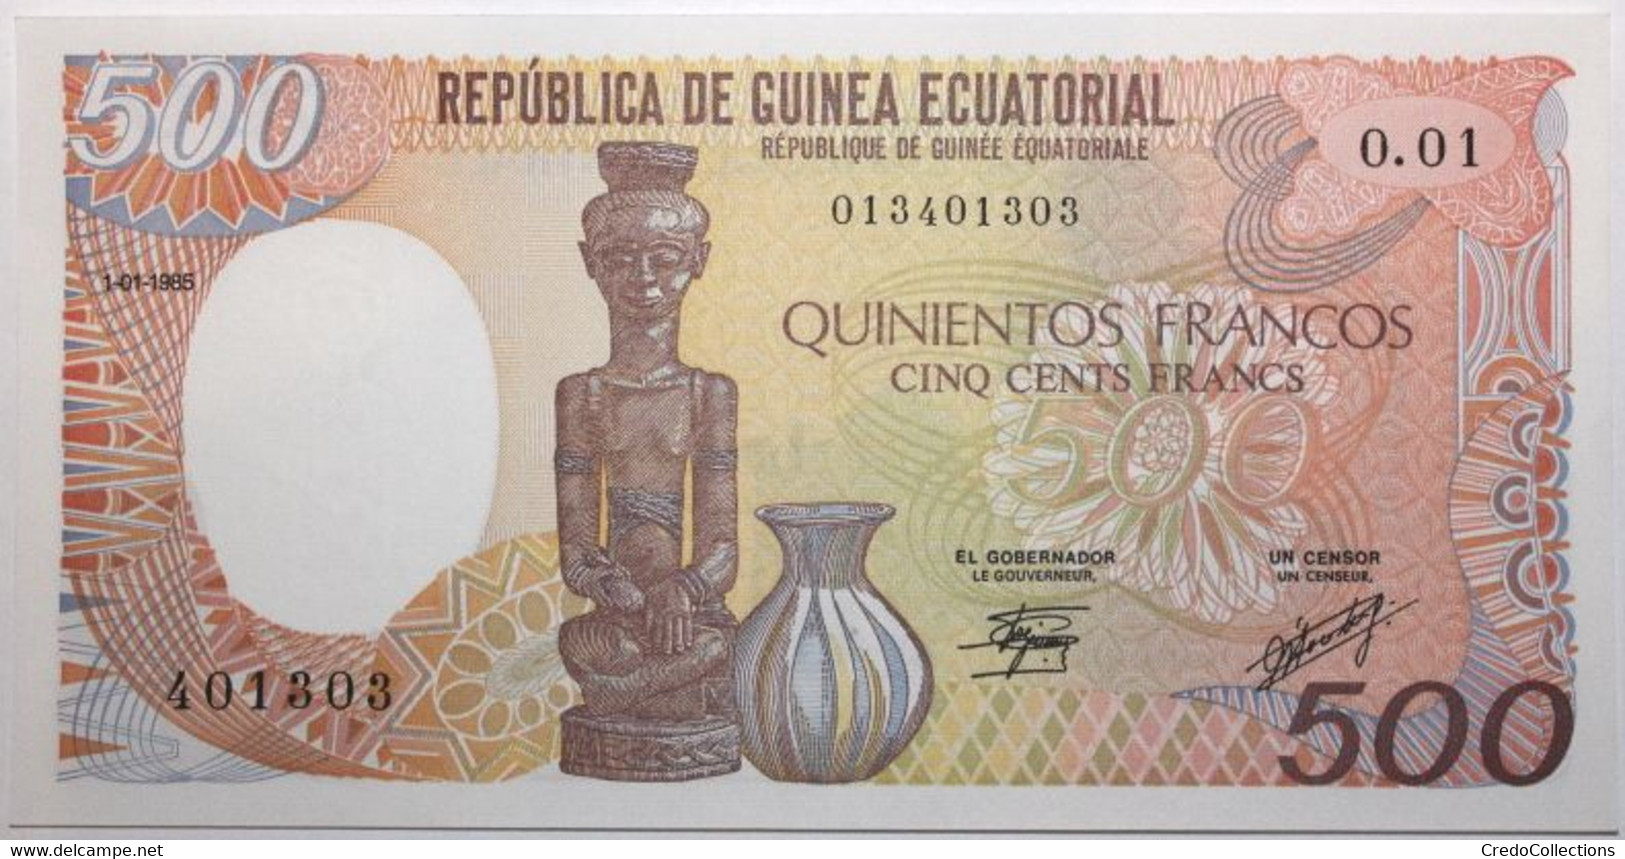 Guinée équatoriale - 500 Francos - 1985 - PICK 20 - NEUF - Guinée Equatoriale